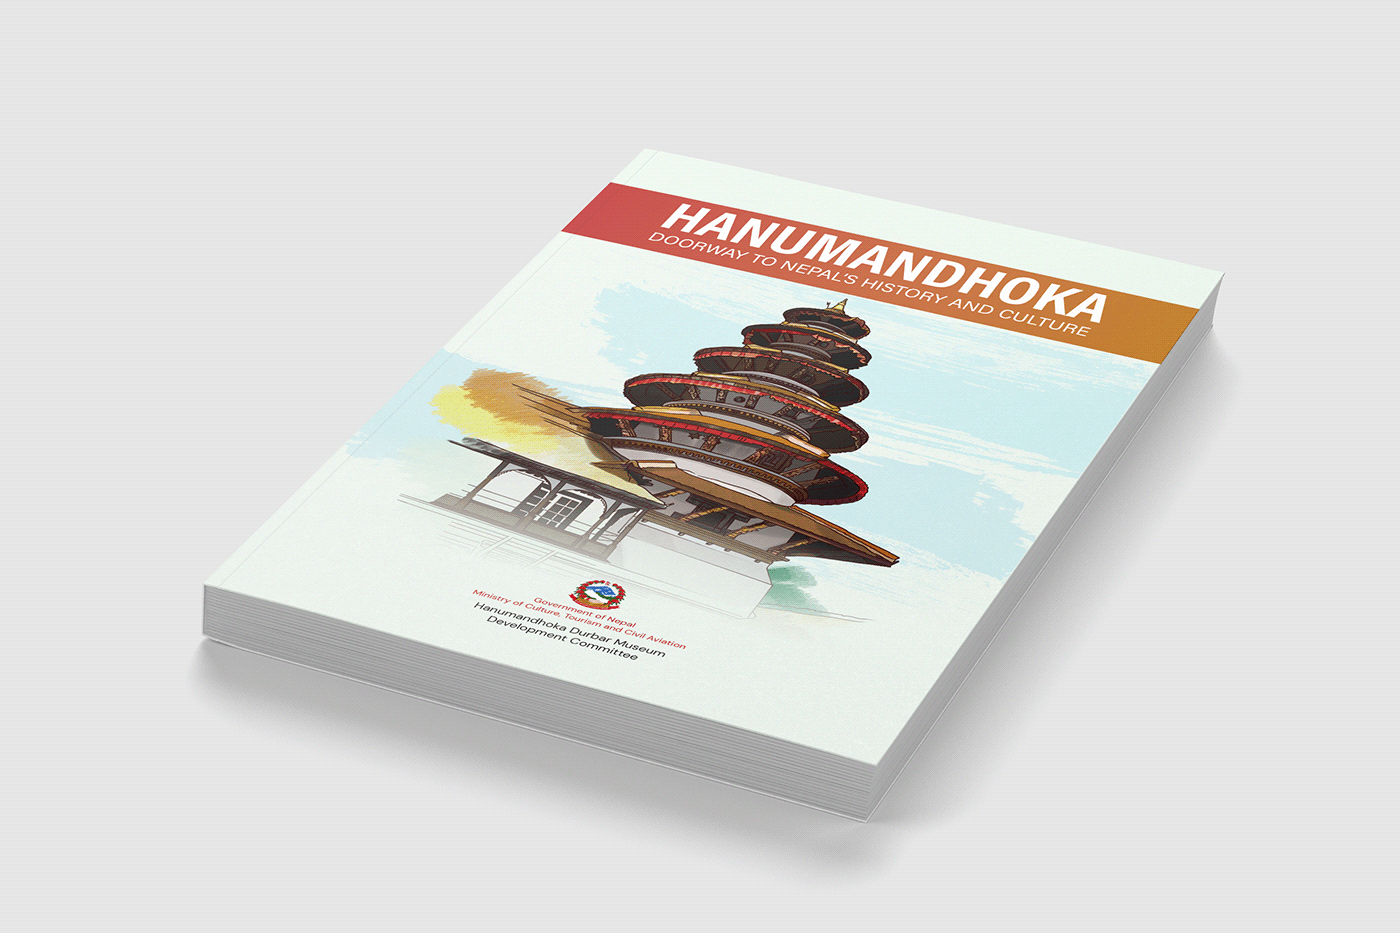 book book design booklet design Cultural Book culture Design and Layout Hanumandhoka History and culture Nepal Book Nepali Book